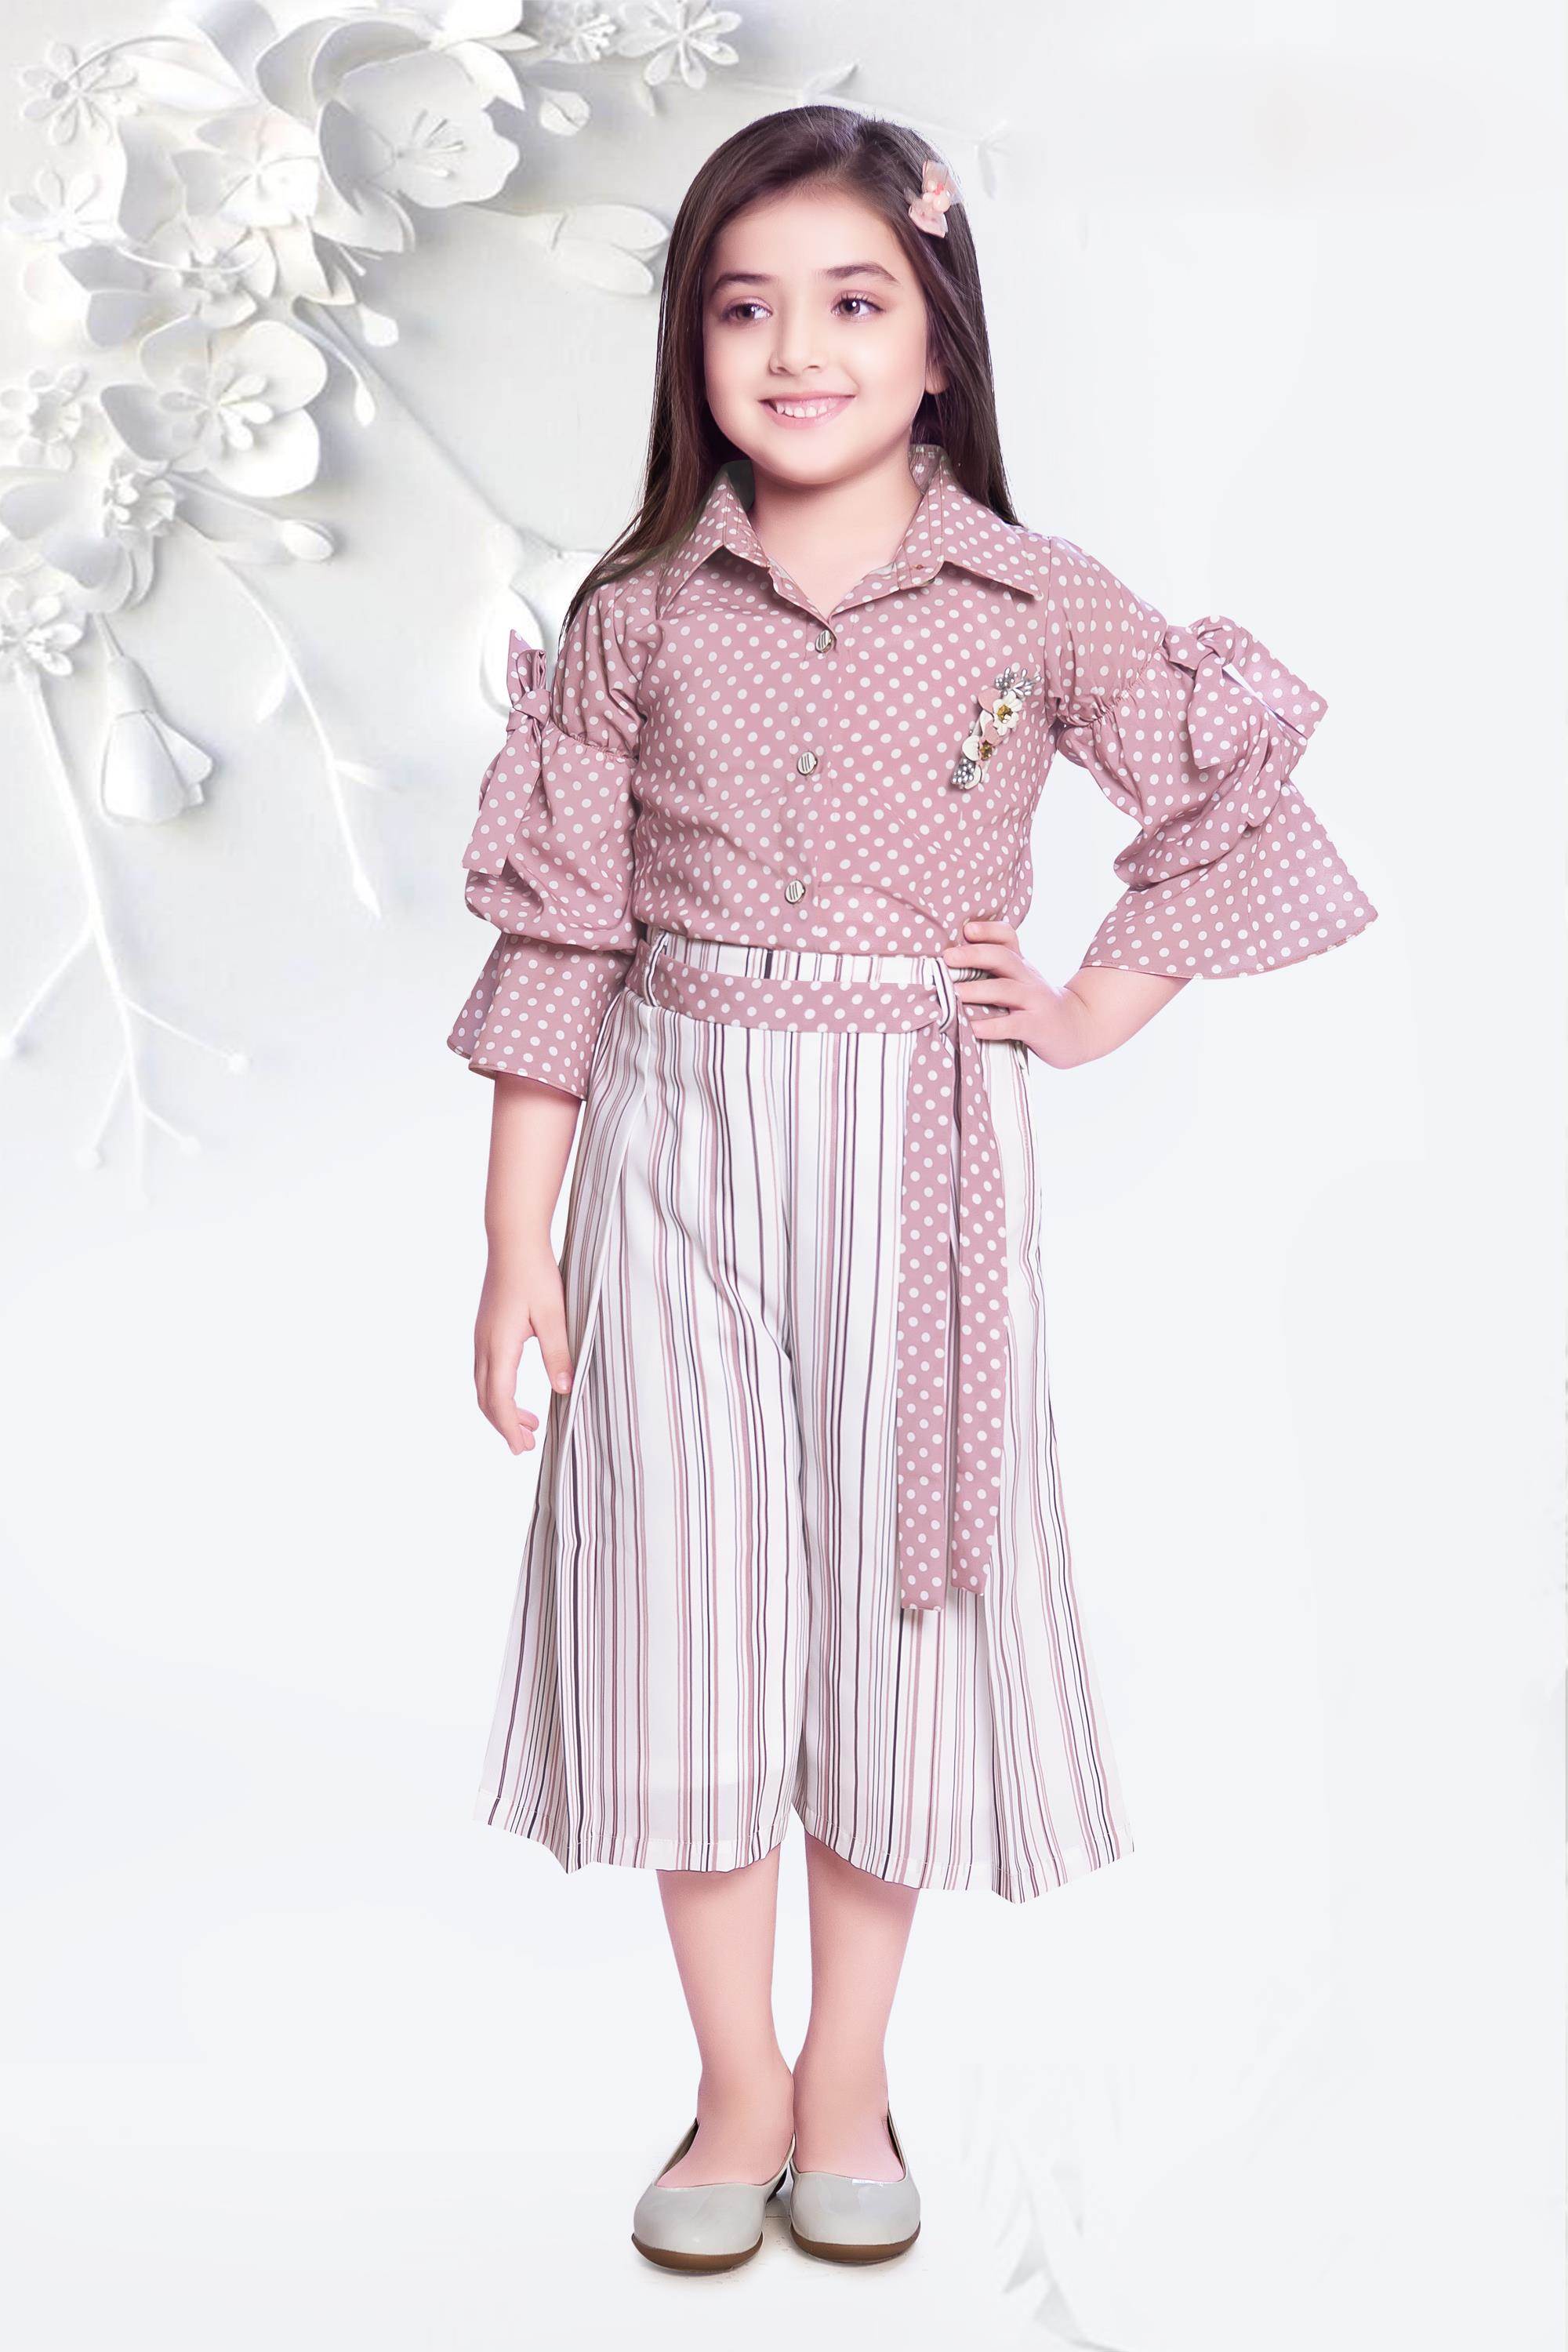 AG Fashion लड़कियों के लिए फैंसी ड्रेस / 3 पीस सेट लड़कियों/कपड़ों के सेट  के लिए (मास्क फ़्री) : Amazon.in: कपड़े और एक्सेसरीज़